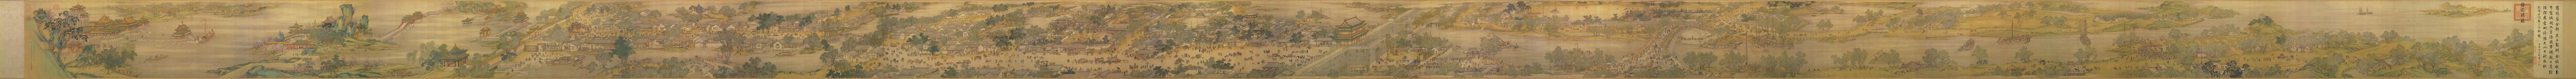 本图描绘了清明时节北宋京城汴梁及汴河两岸的热闹景象和自然风光。